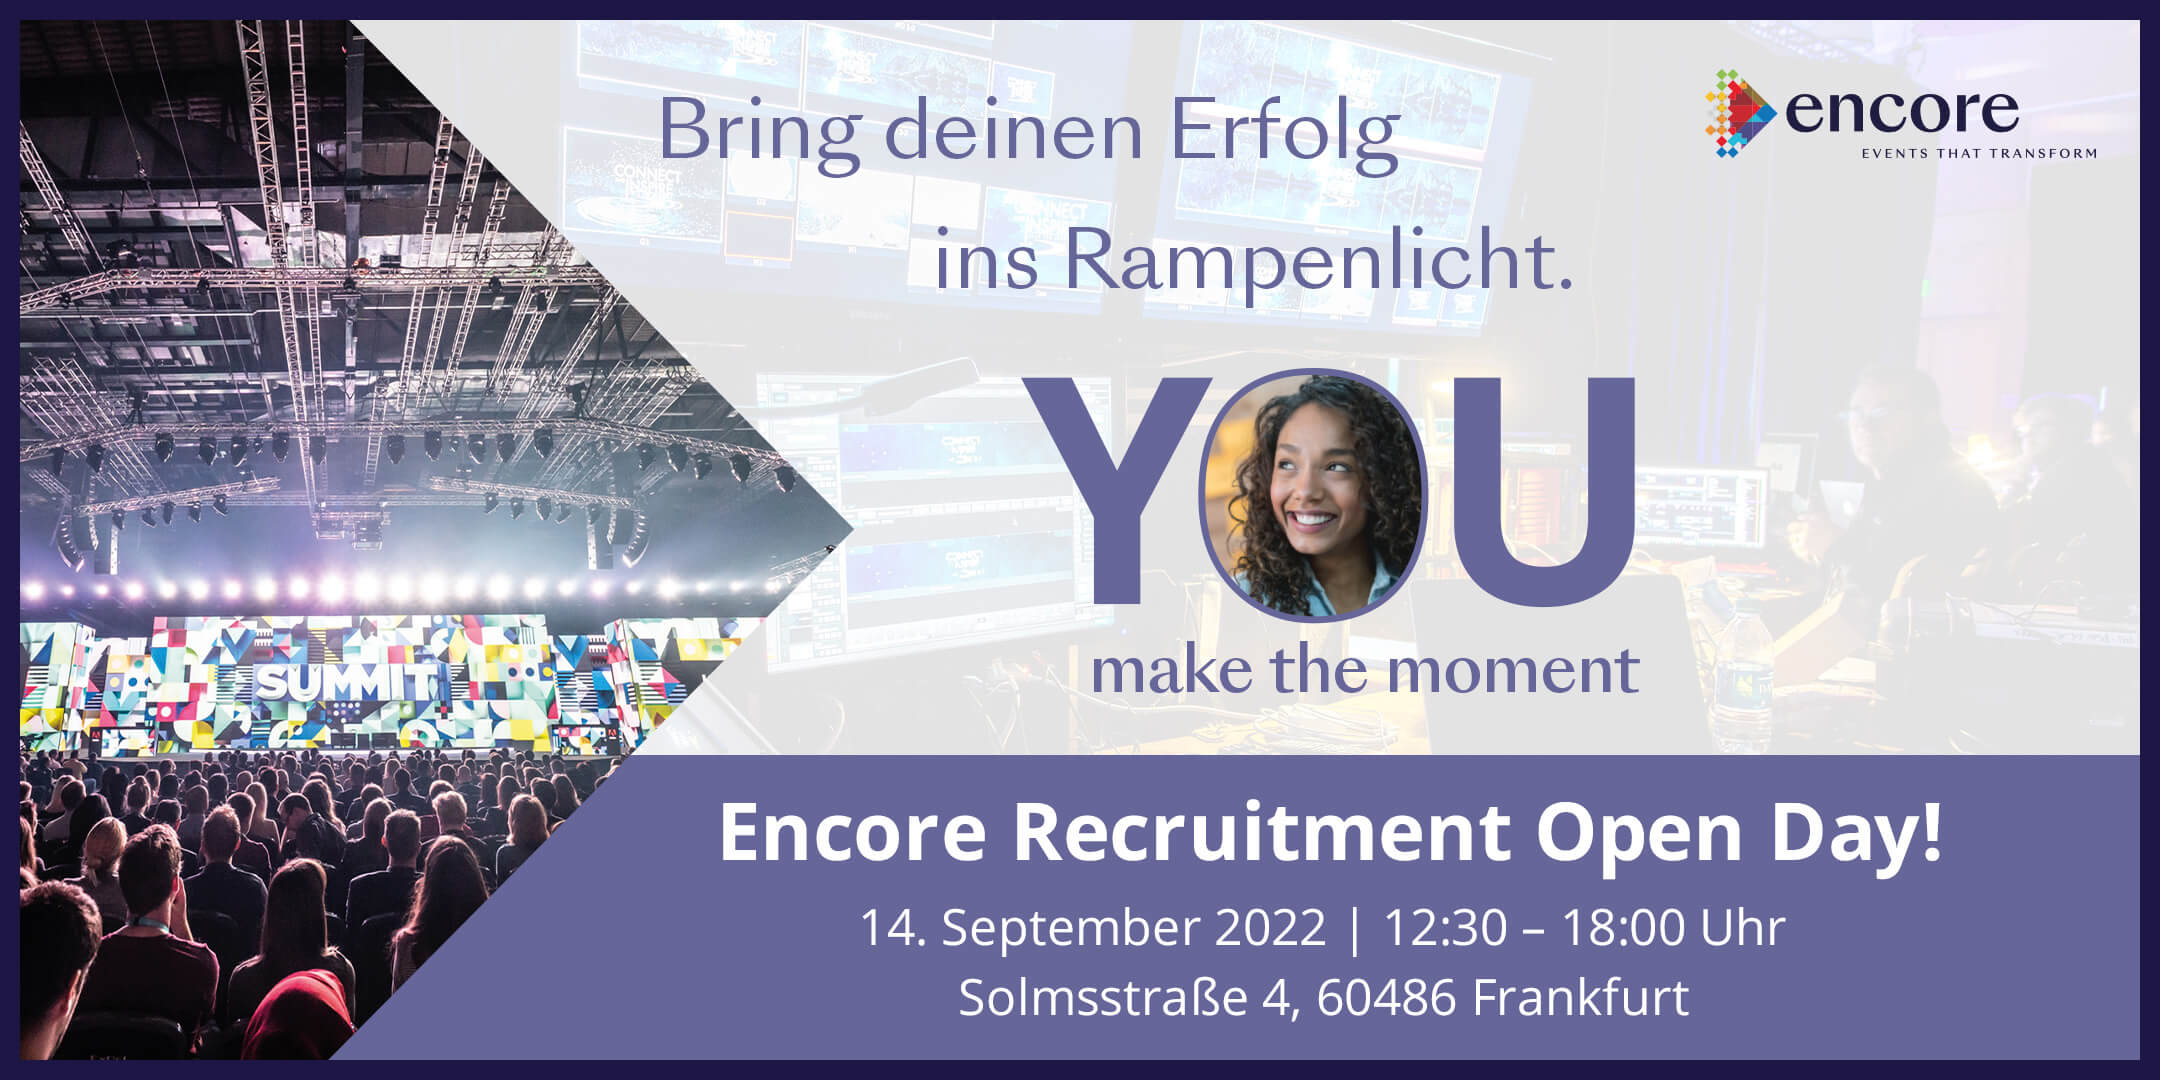 Encore Recruitment Open Day on 14 September 2022 at 12:30 - 18:00 Uhr Solmsstraße 4, 60486 Frankfurt